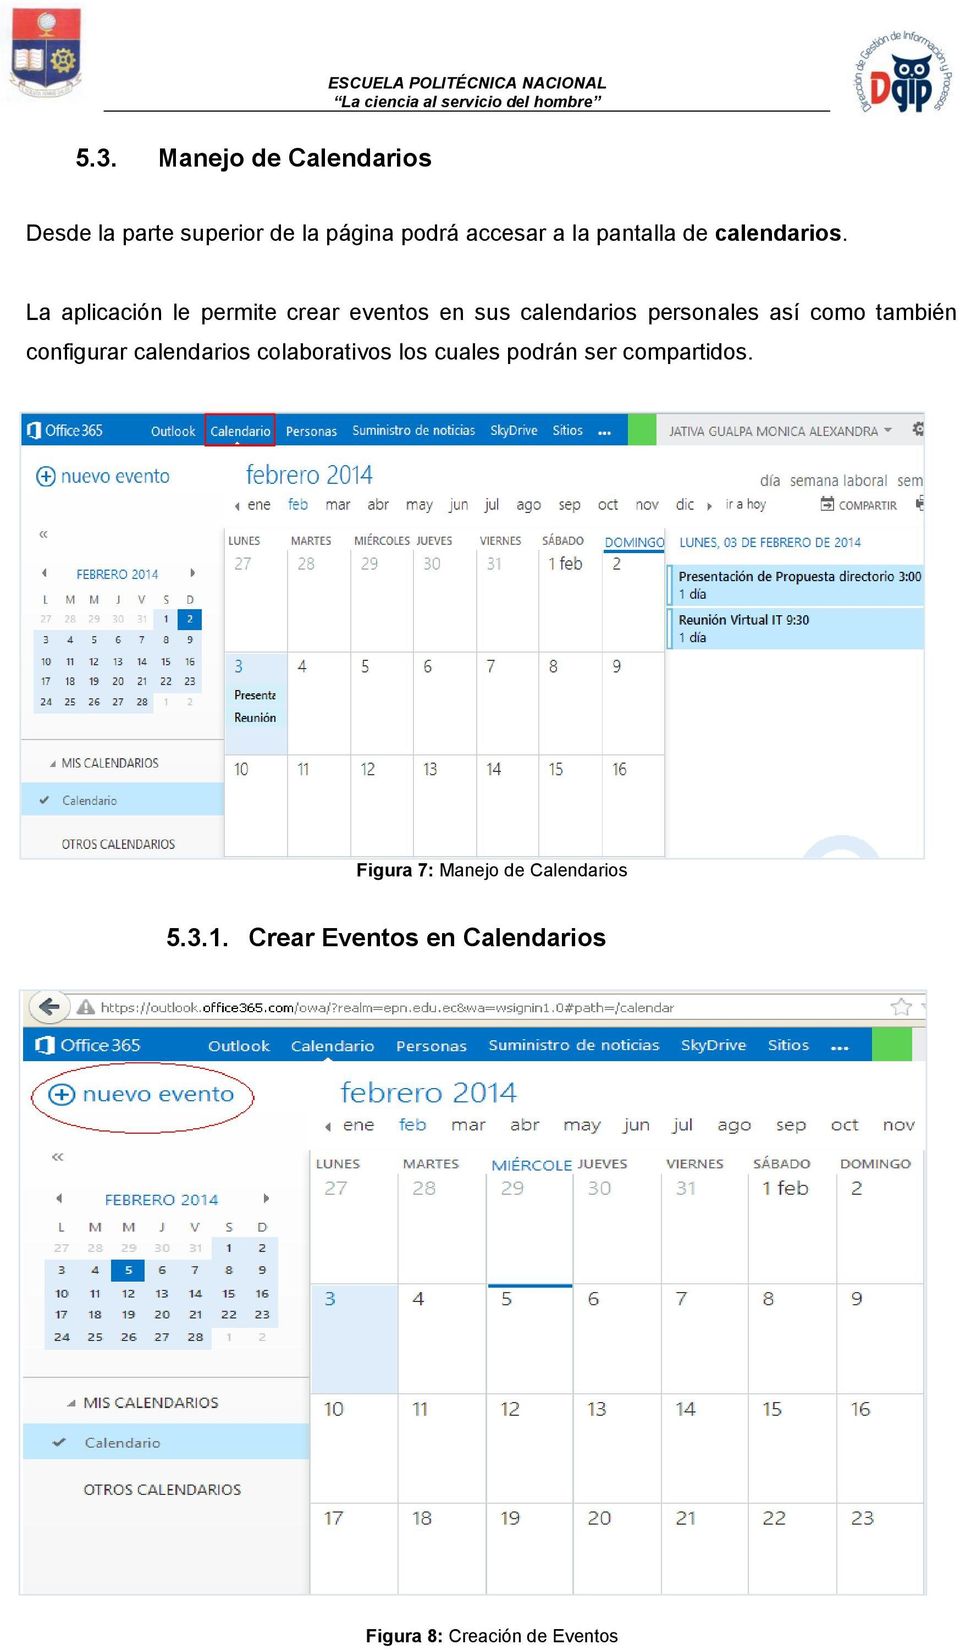 La aplicación le permite crear eventos en sus calendarios personales así como también